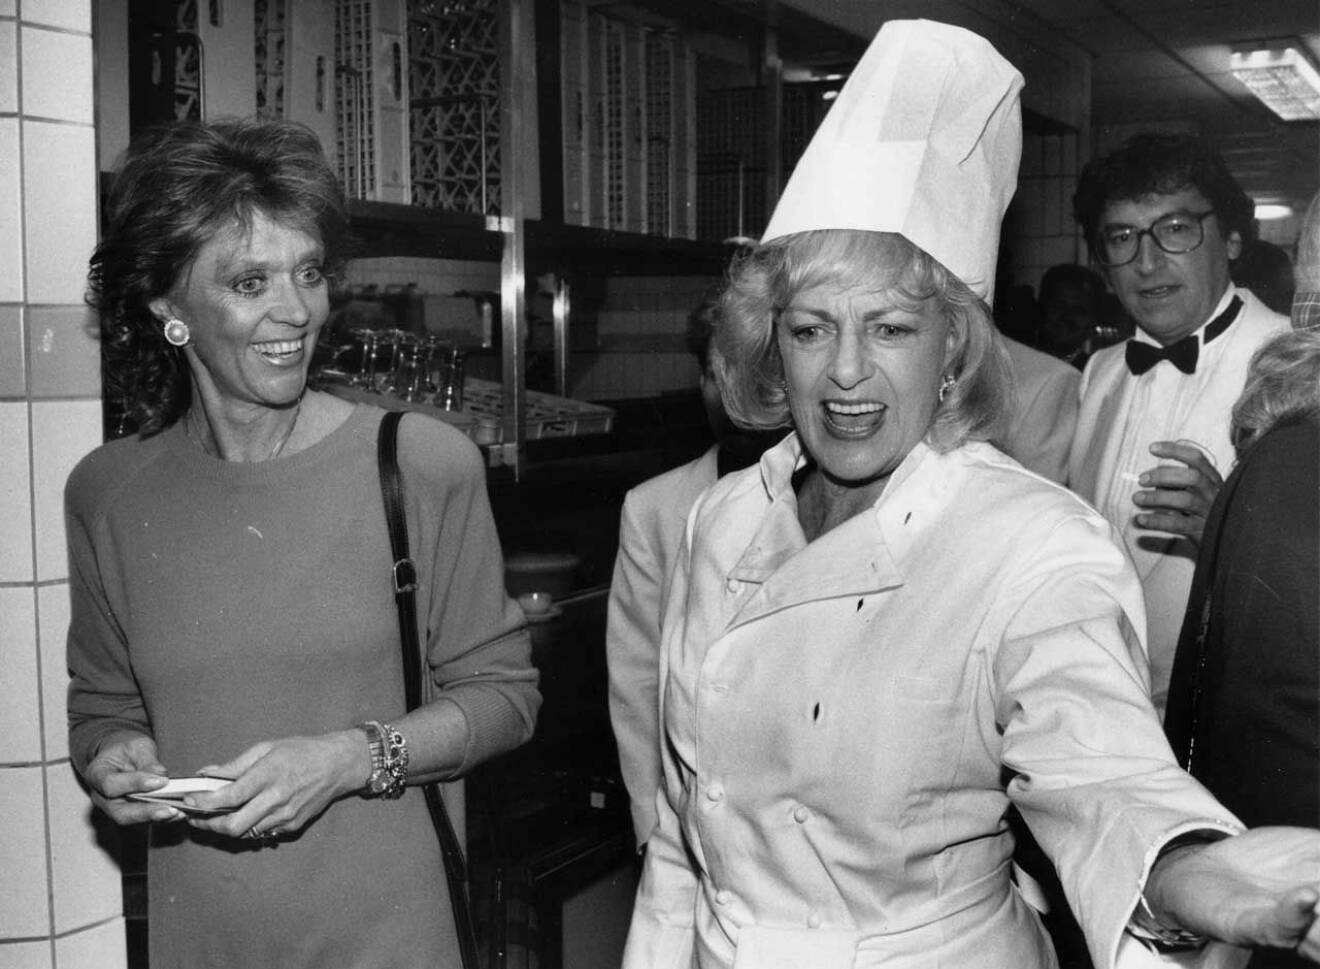 Alice visar runt prinsessan Birgitta, då hon agerar kock på Grand Hôtel i Stockholm. I bakgrunden ses Magnus Härenstam. Året är 1989.